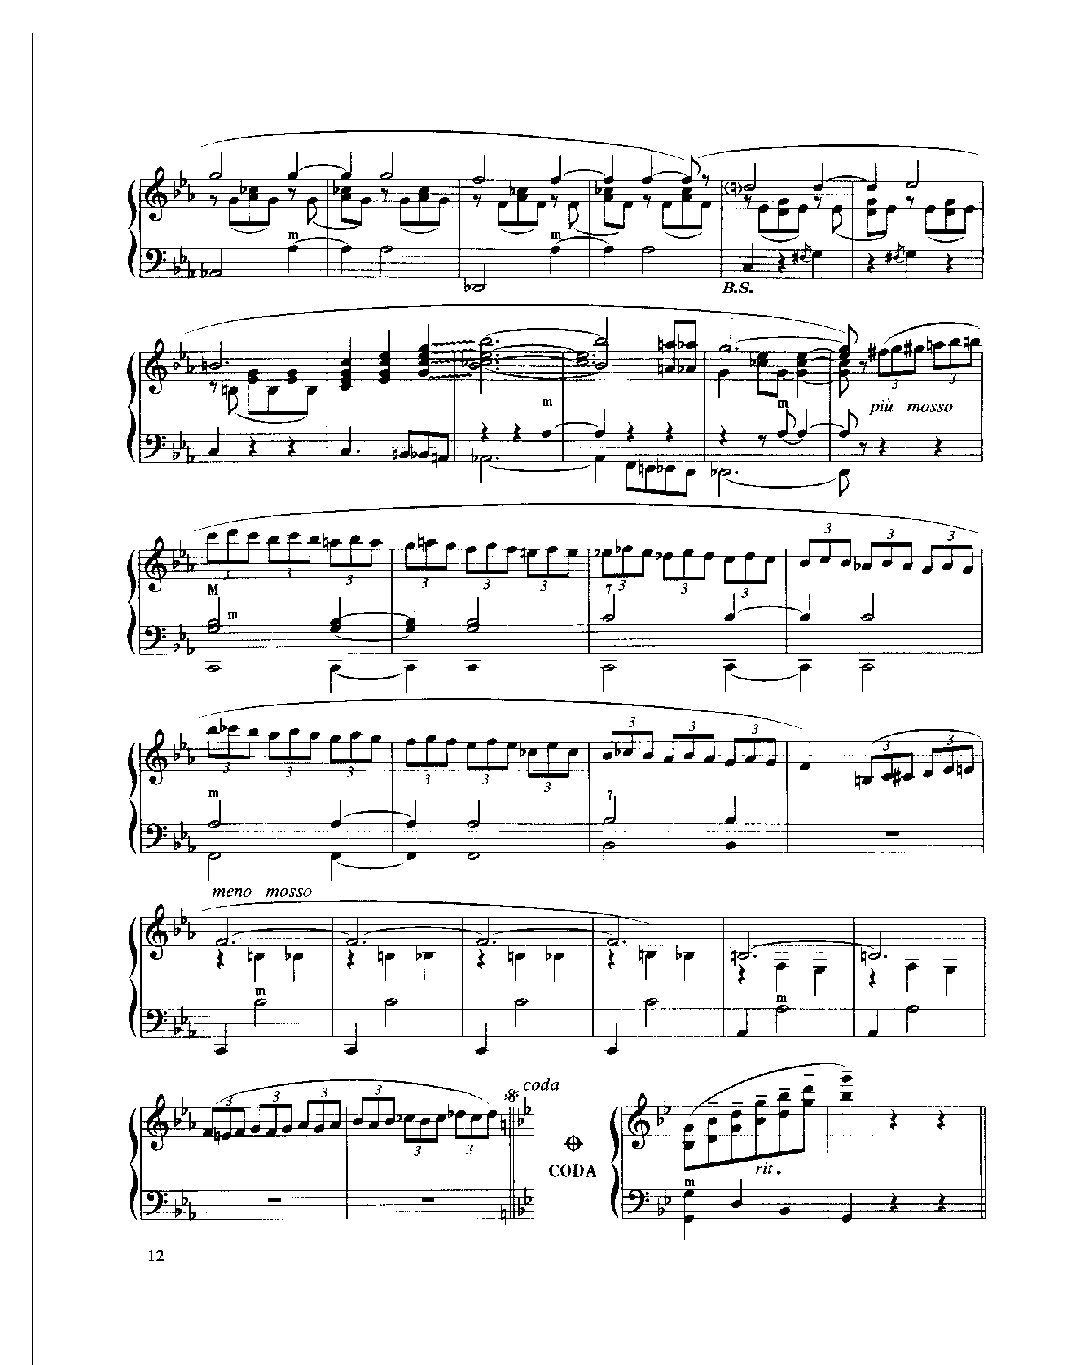 现代手风琴流行乐曲《马尔戈华尔兹》[法]里奥哈特·加里亚诺曲